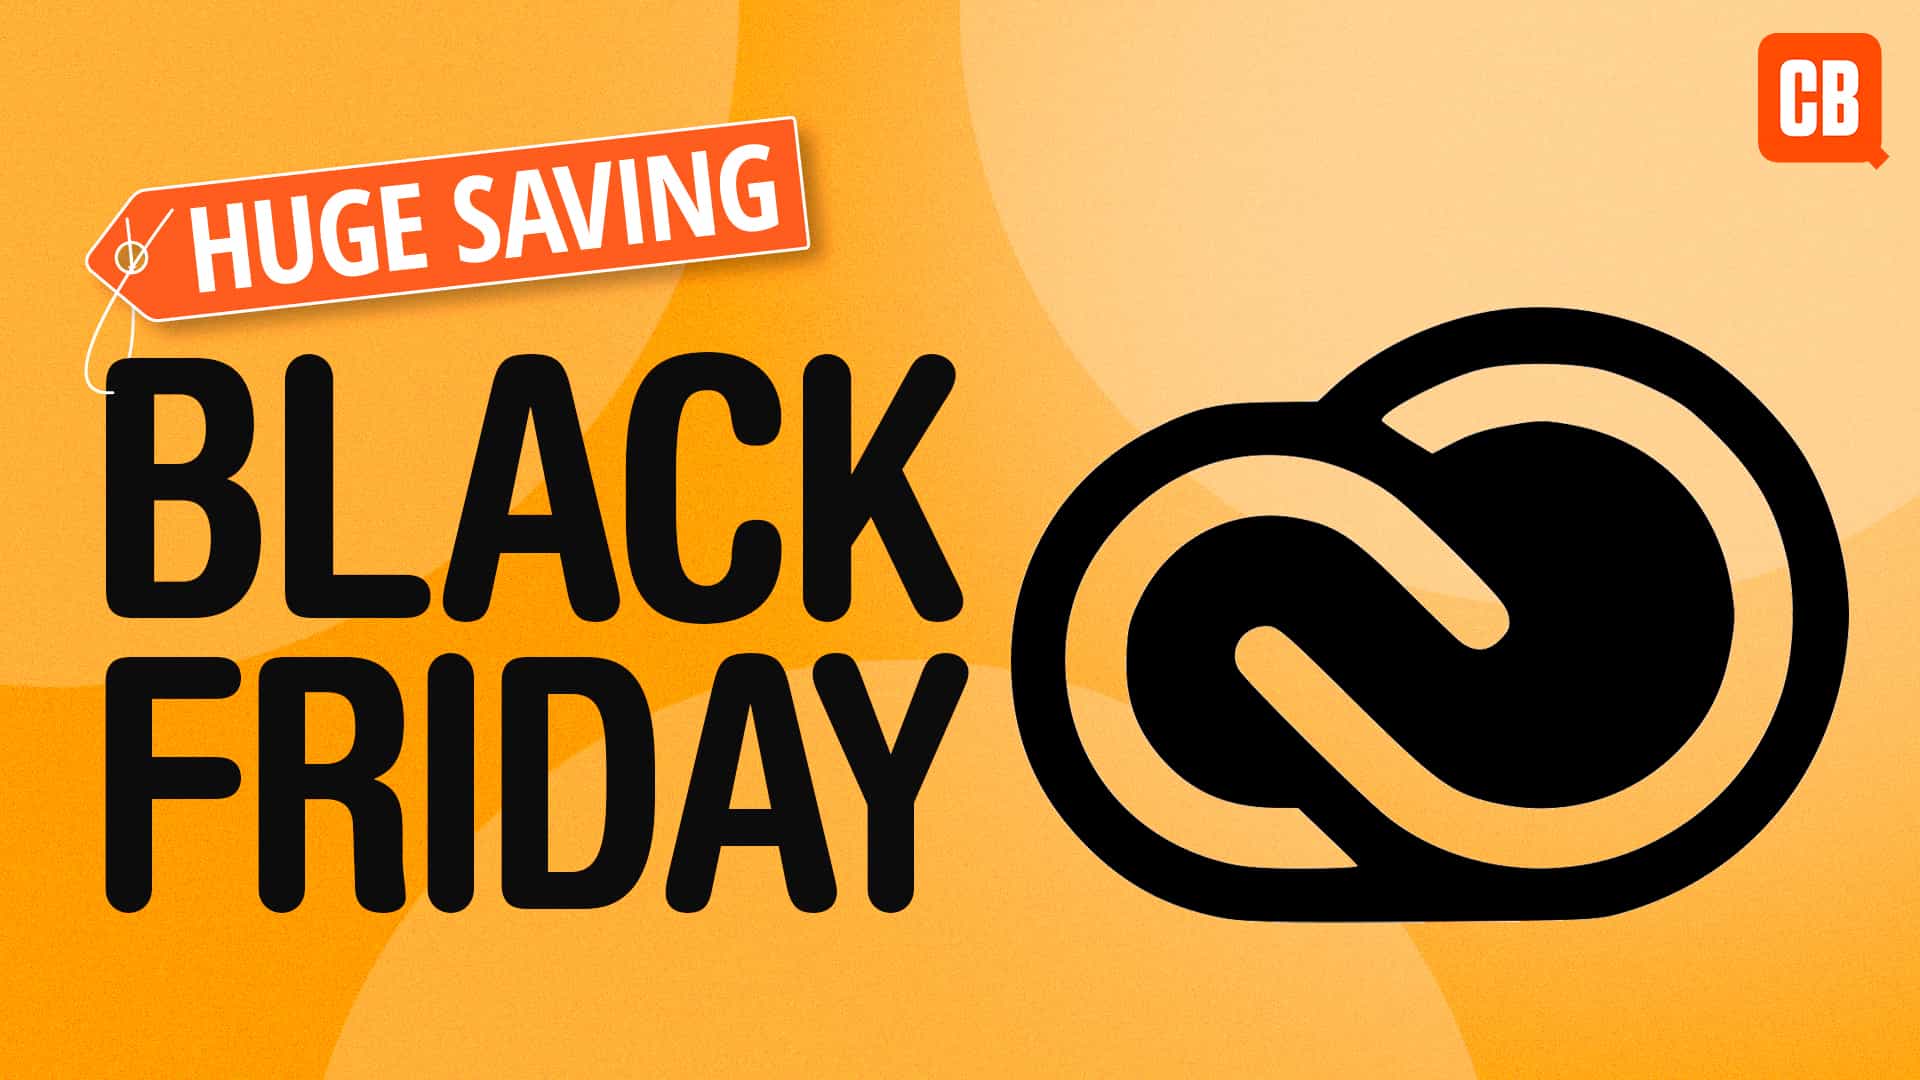 Esta es la mejor oferta de Adobe para el Black Friday que hemos visto: obtén un 50% de descuento